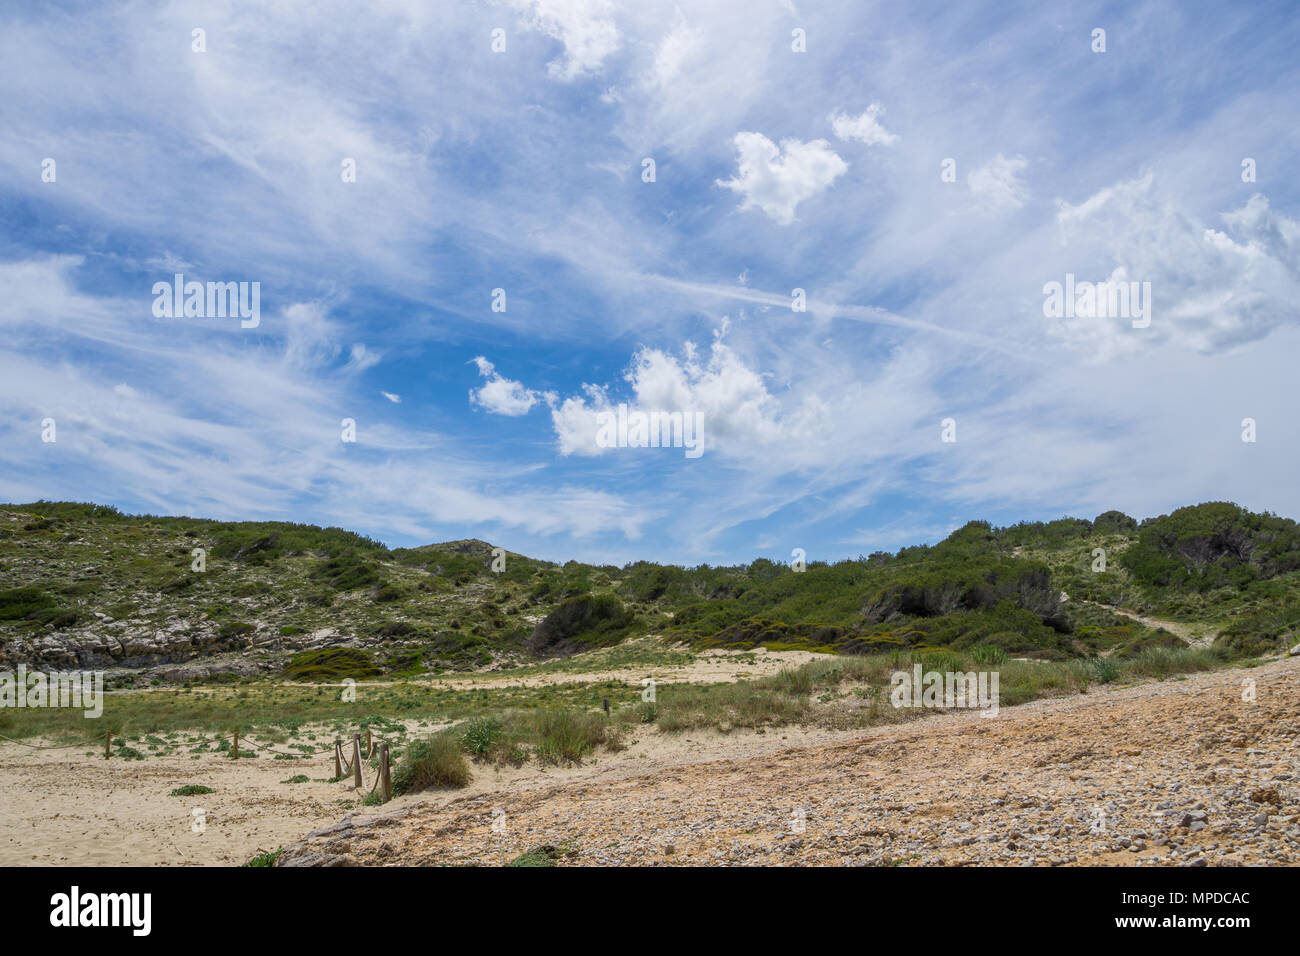 Mallorca, Wanderwege durch die grünen Boden Vegetation in der Nähe von Cala Mitjana Bucht mit blauen Himmel Stockfoto